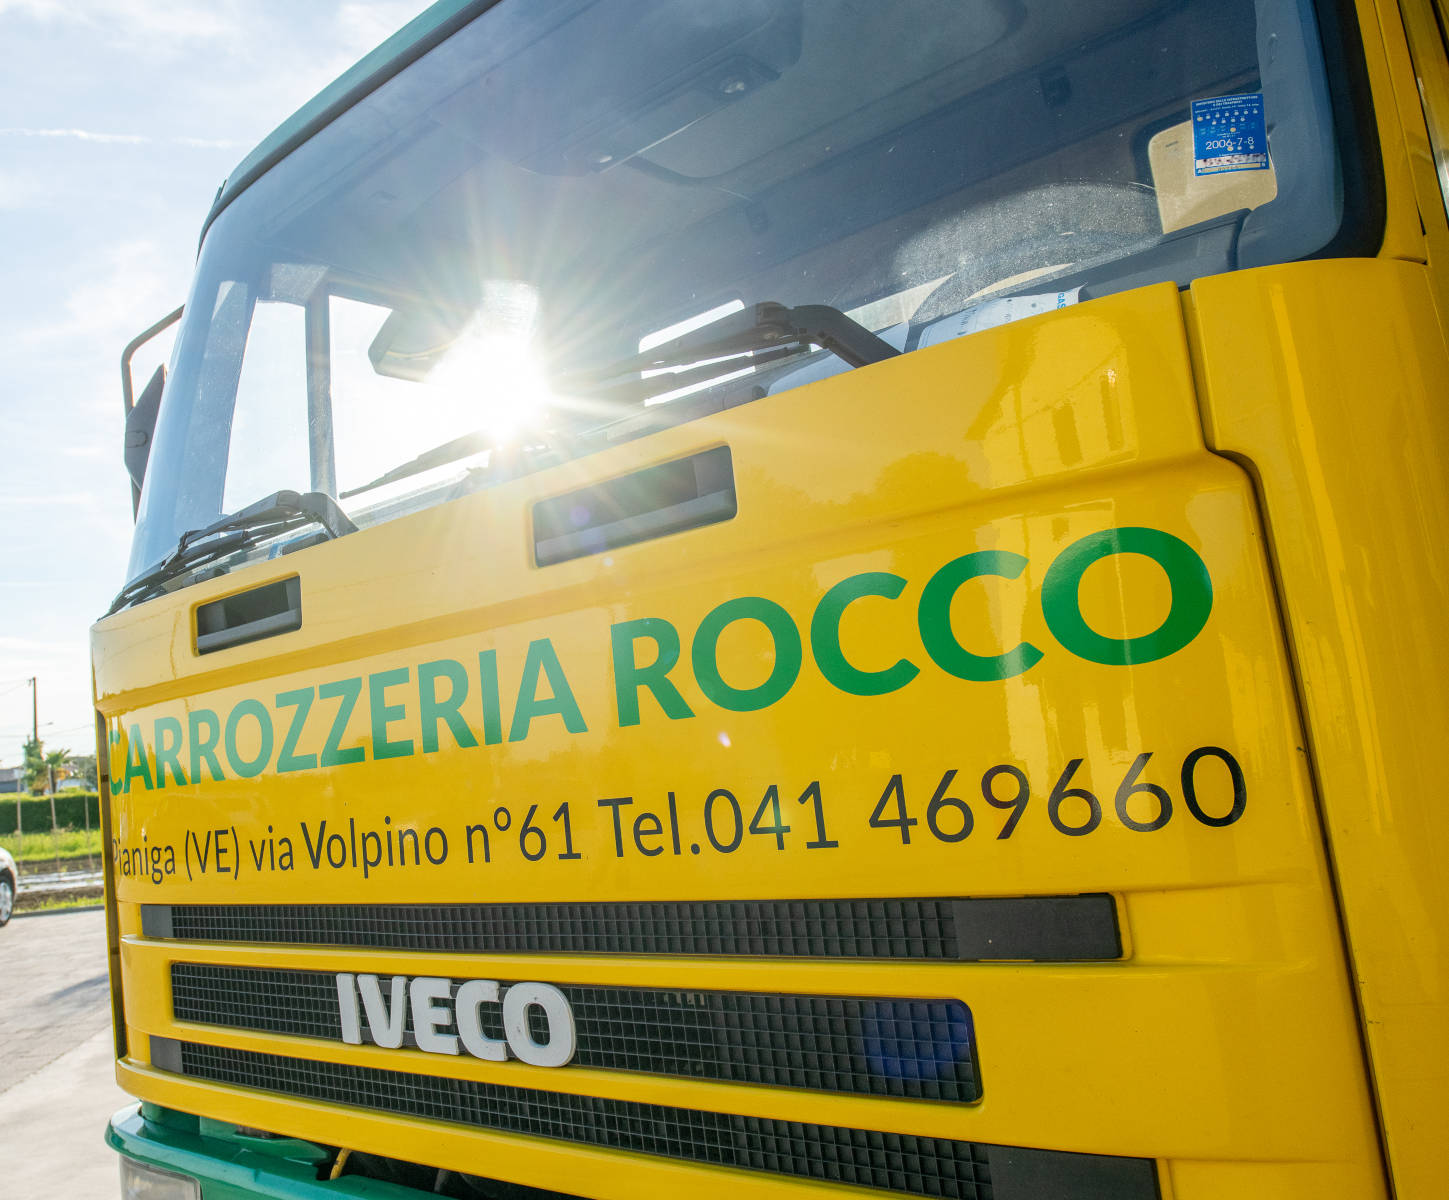 Carrozzeria Rocco | Revisioni, Servizio Stradale, Carrozzeria